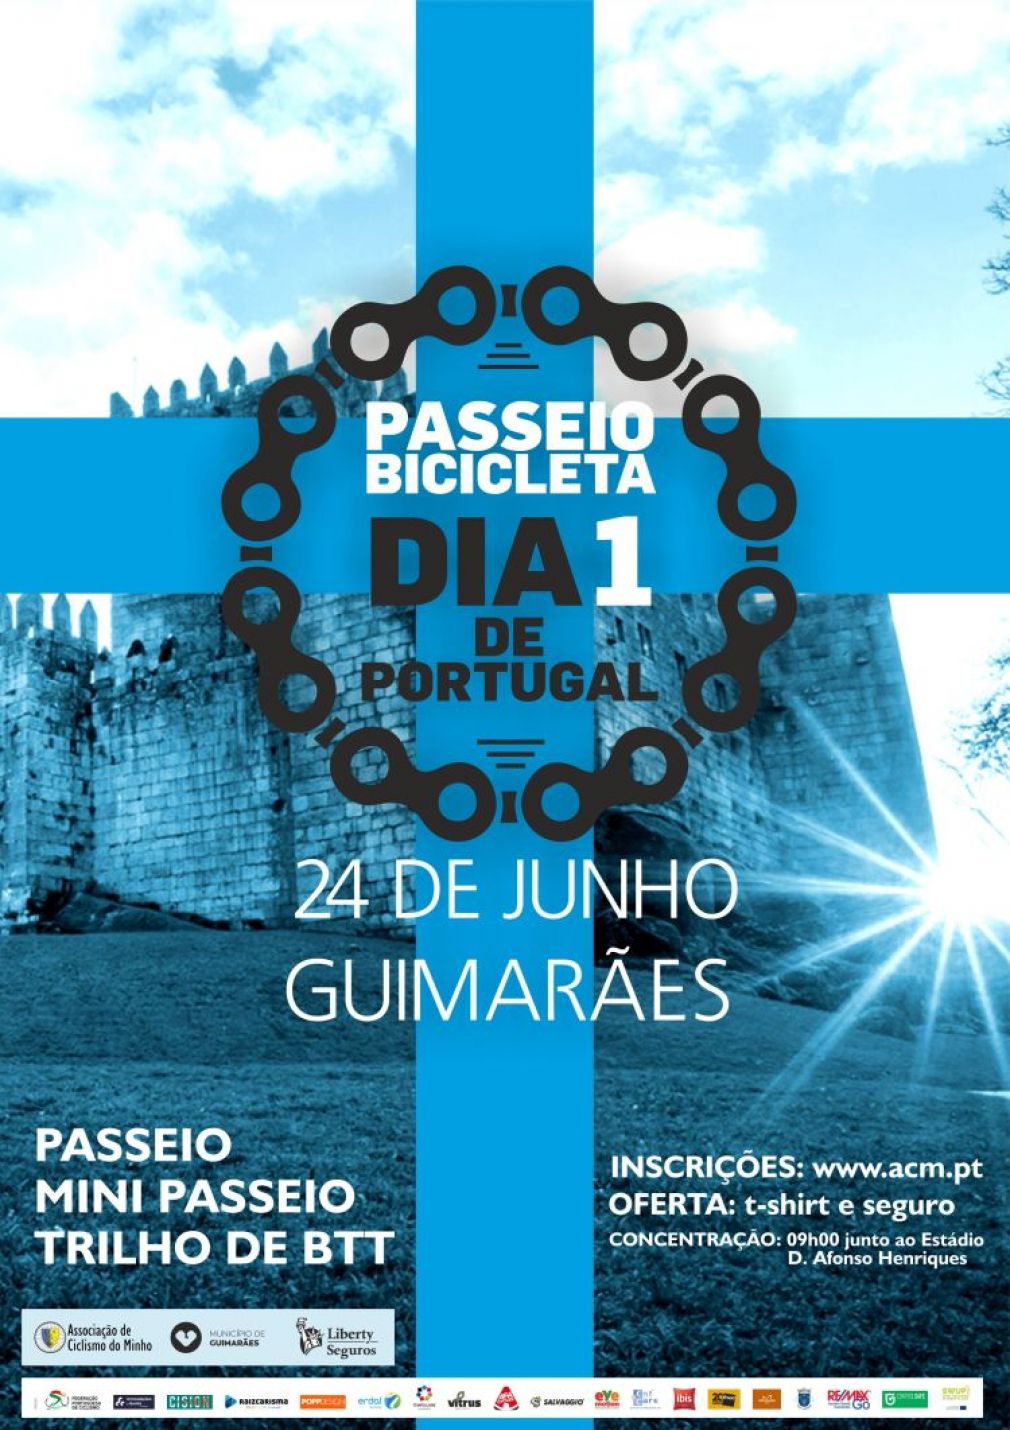 Passeio de Bicicleta Dia 1 de Portugal (Guimarães, 24 de junho)